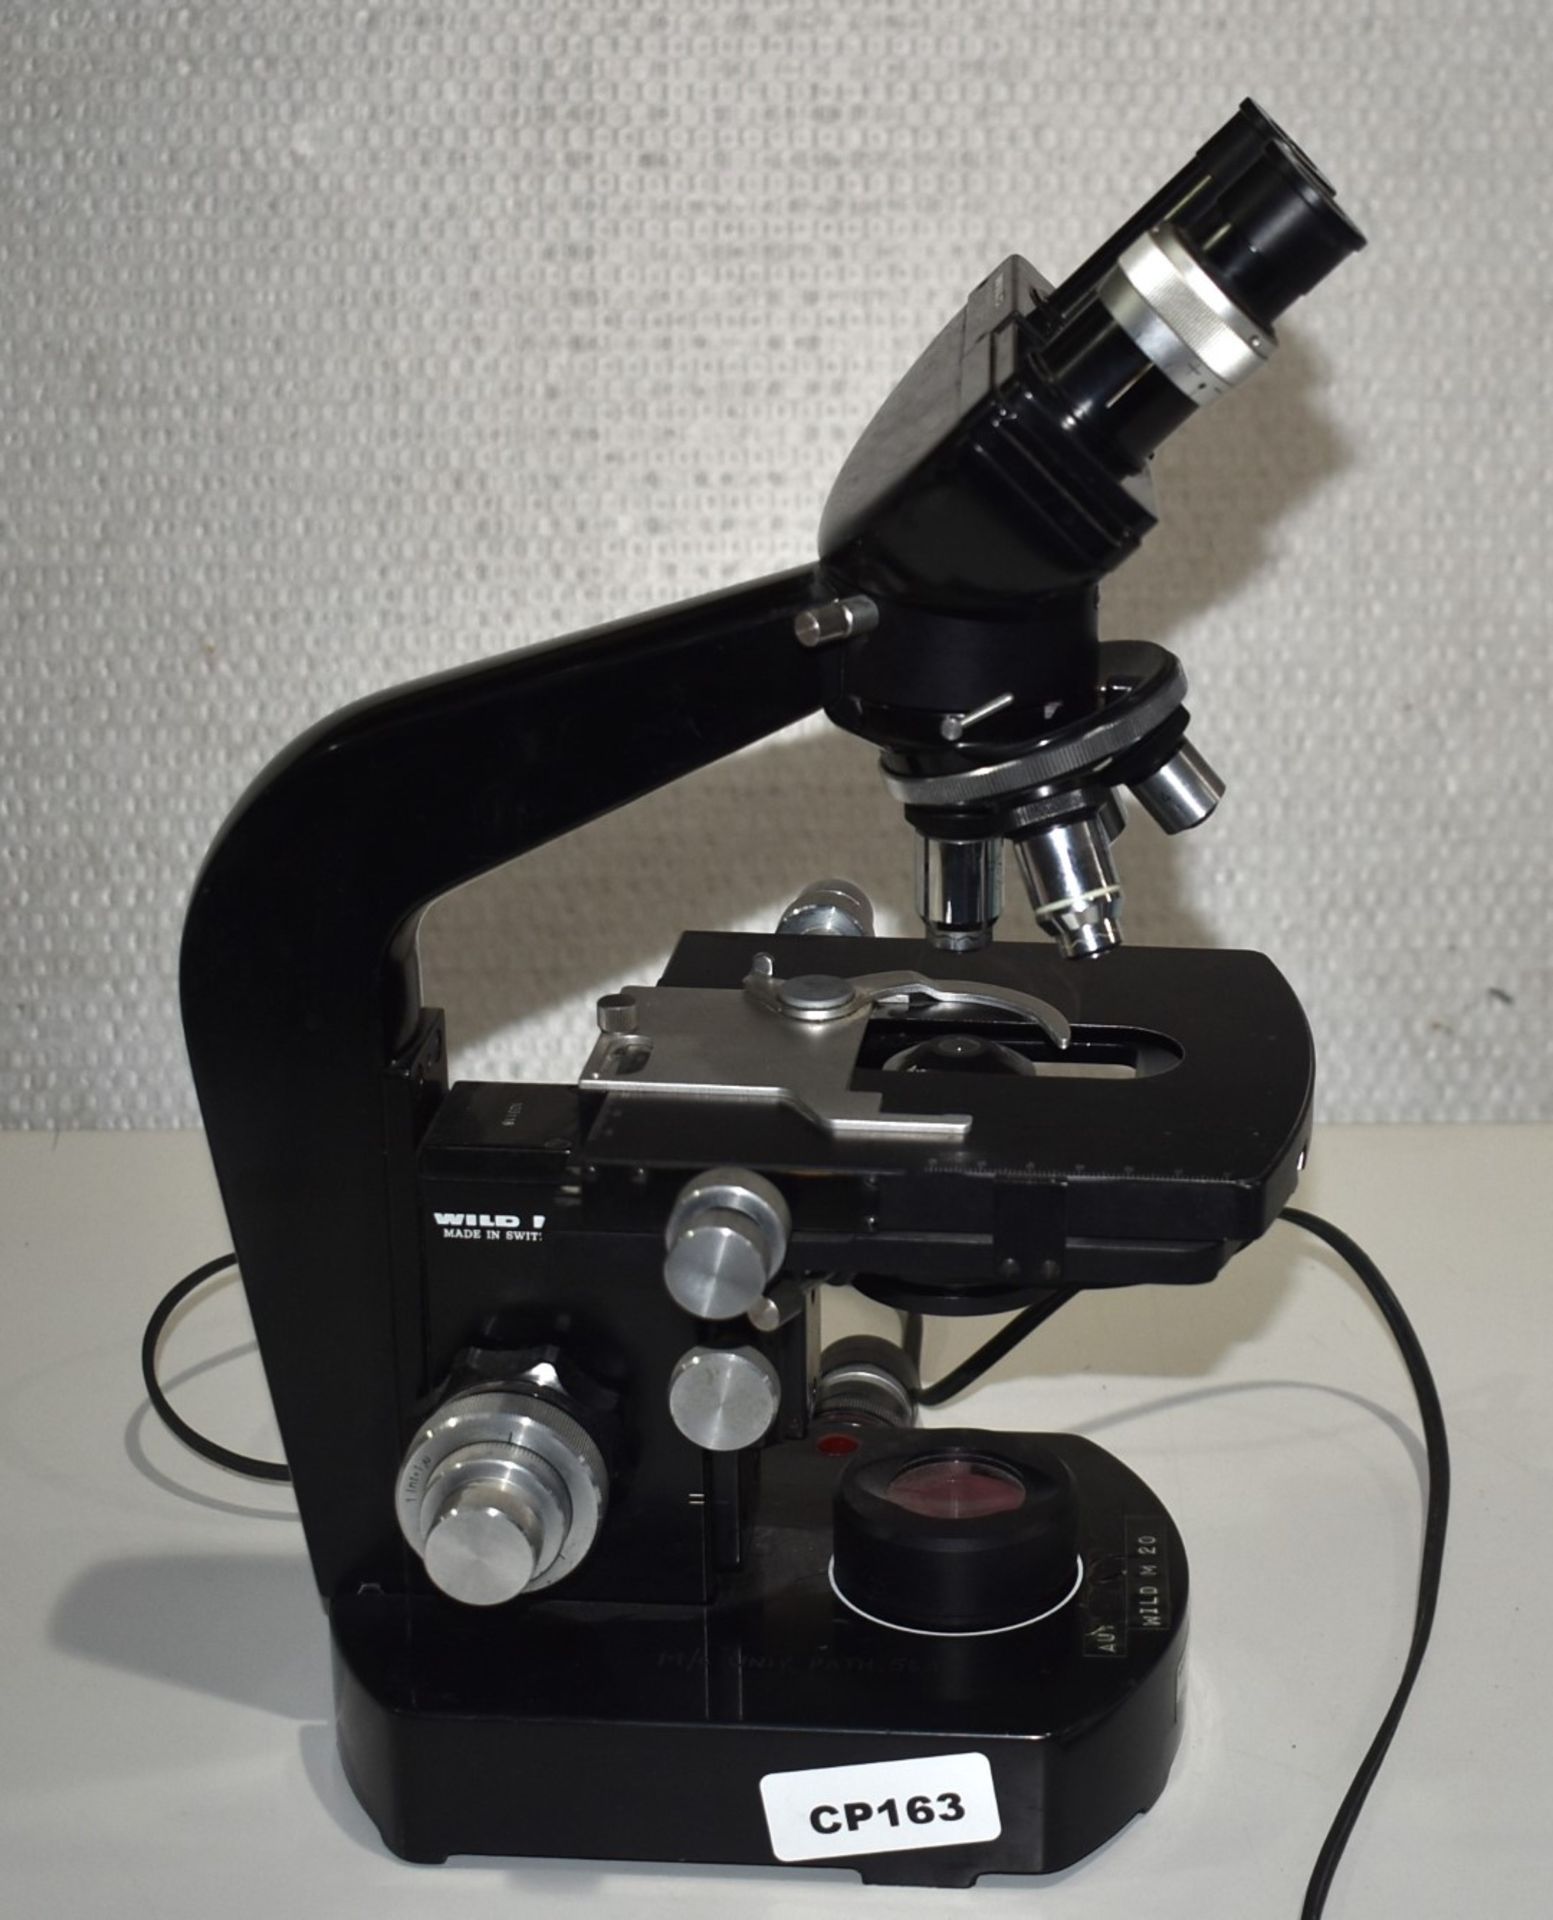 1 x Wild M20 Microscope - Image 4 of 9